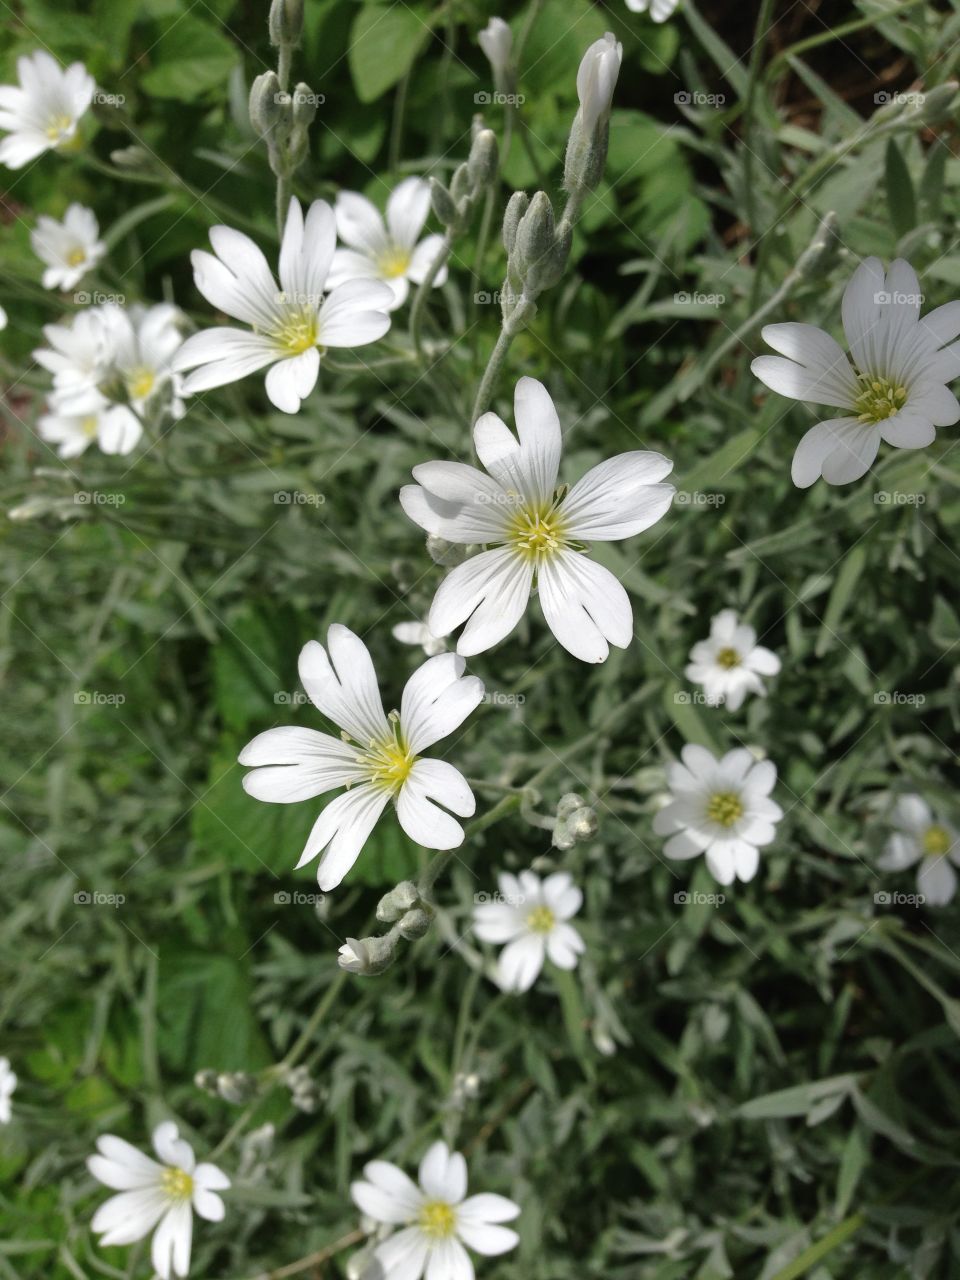 Little white flowers